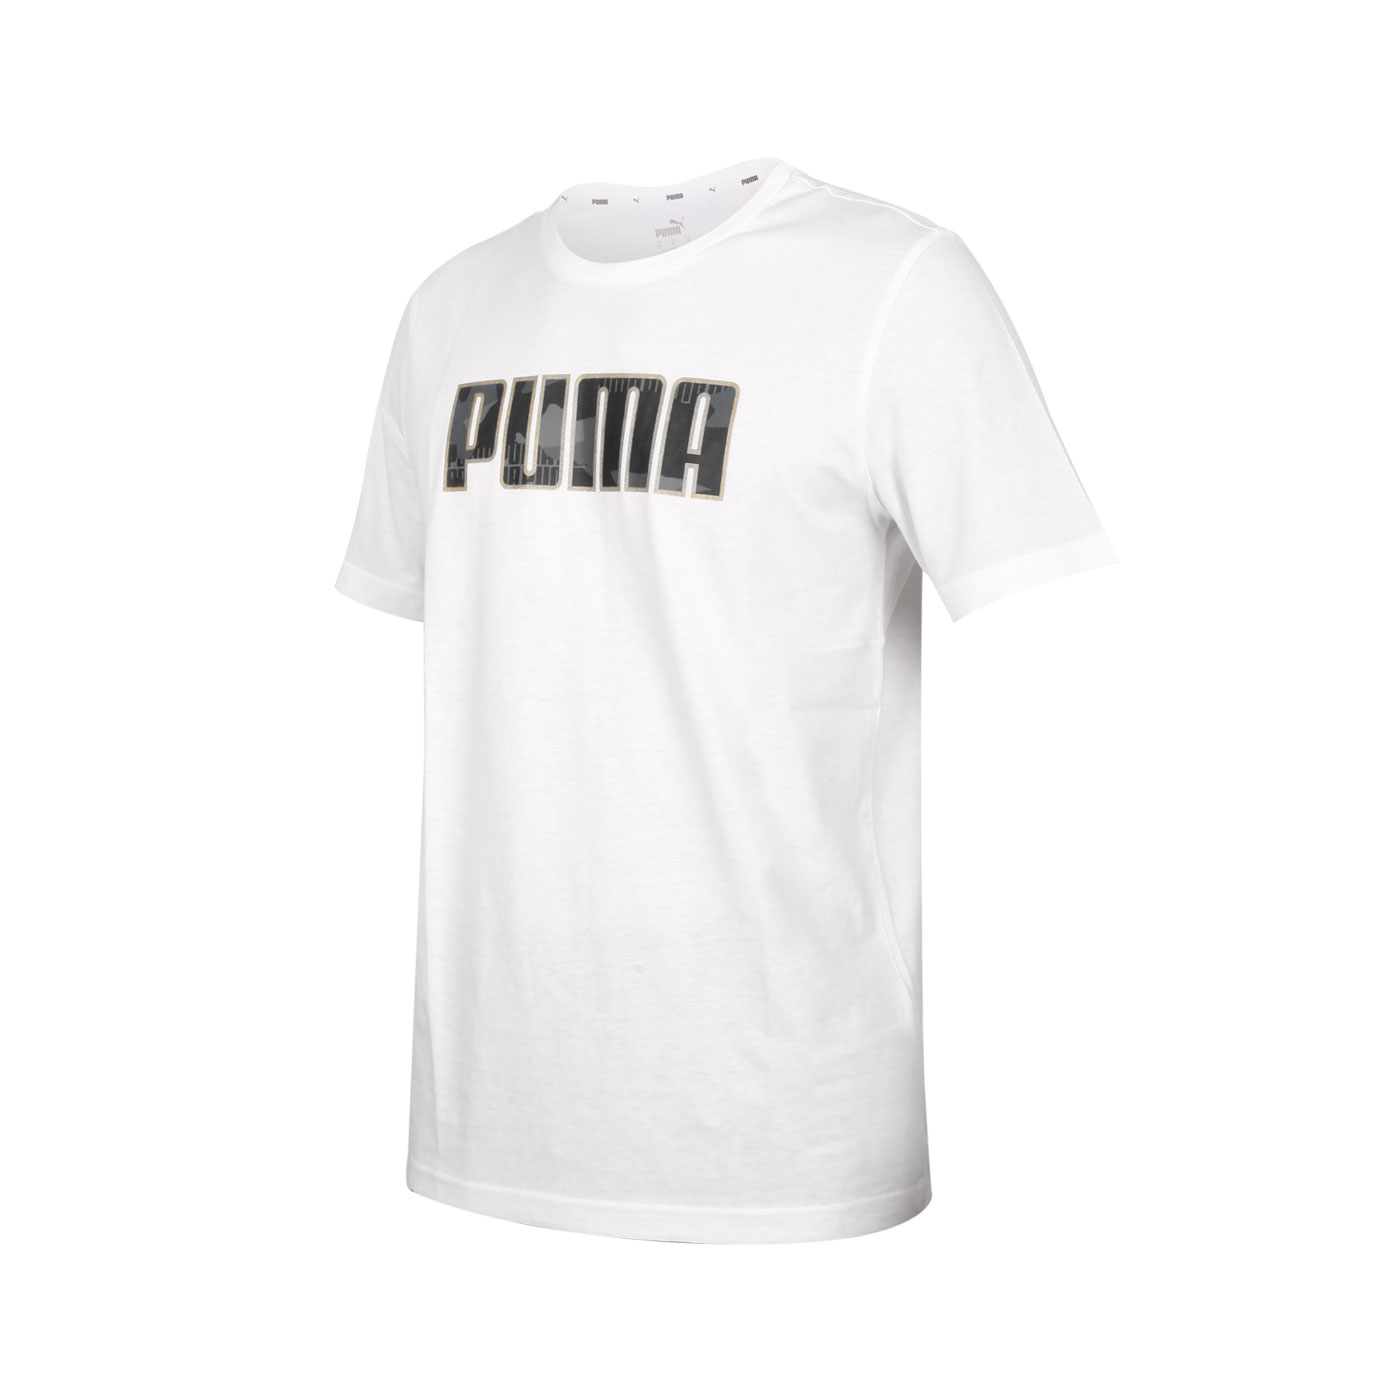 PUMA 男款基本系列短袖T恤 58714402 - 白金黑